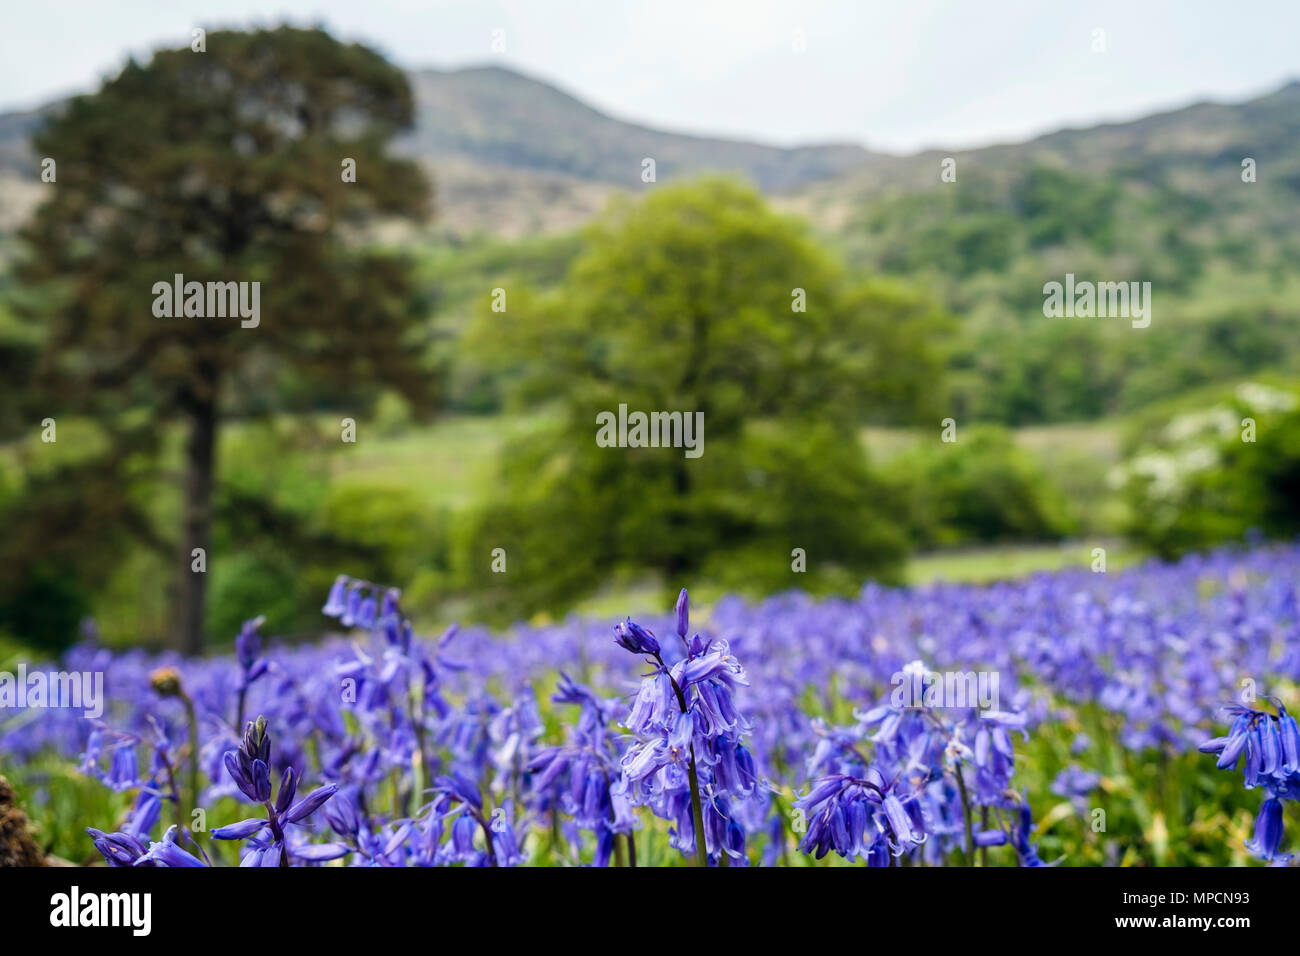 Low angle view of Bluebells croissant sur une colline dans le parc national de Snowdonia, à la fin du printemps au début de l'été. Nant Gwynant Gwynedd au Pays de Galles Royaume-uni Grande-Bretagne Banque D'Images